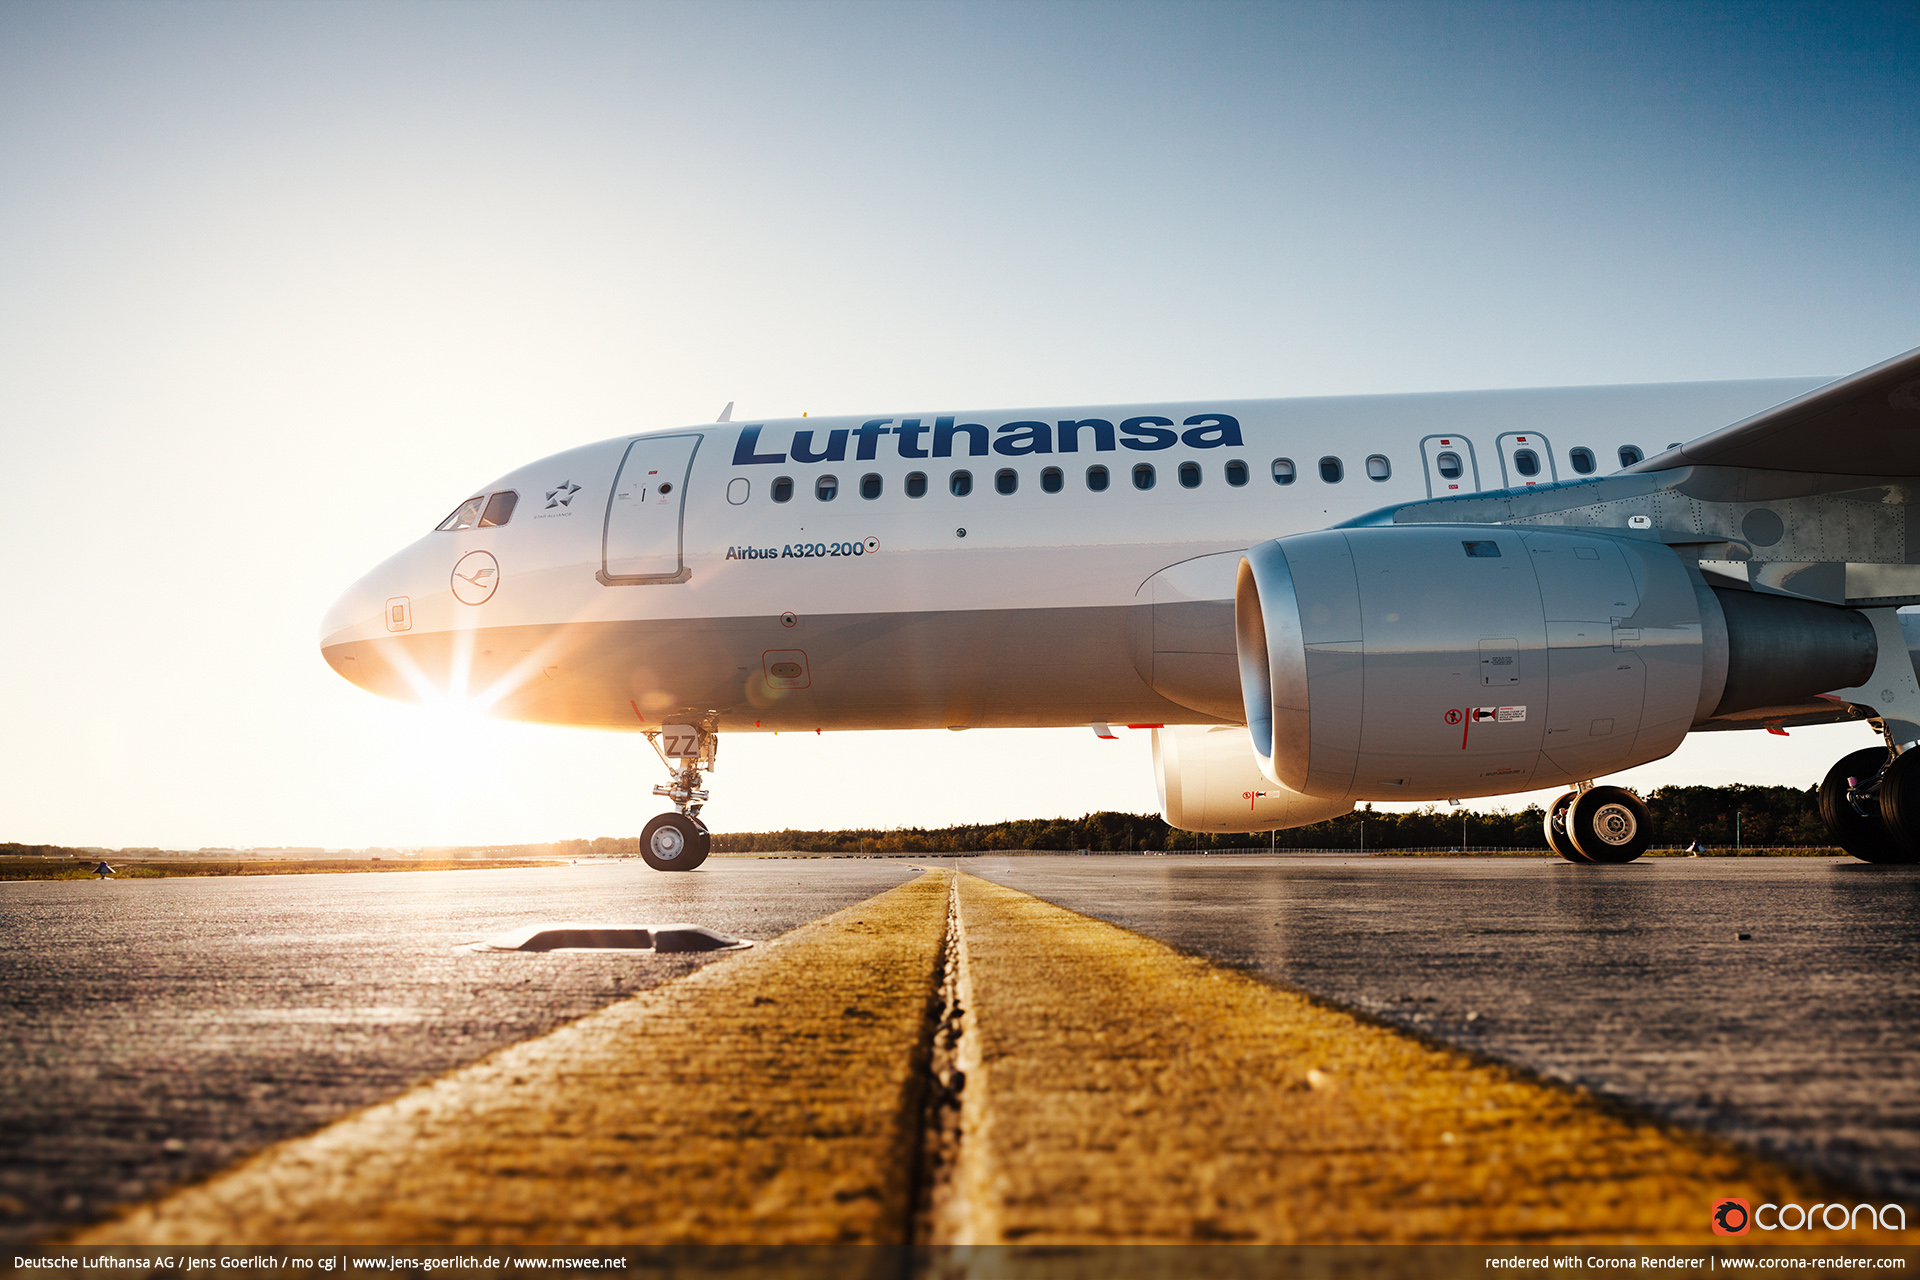 Deutsche Lufthansa AG / Jens Goerlich / mo cgi - Lufthansa A320 Corona render